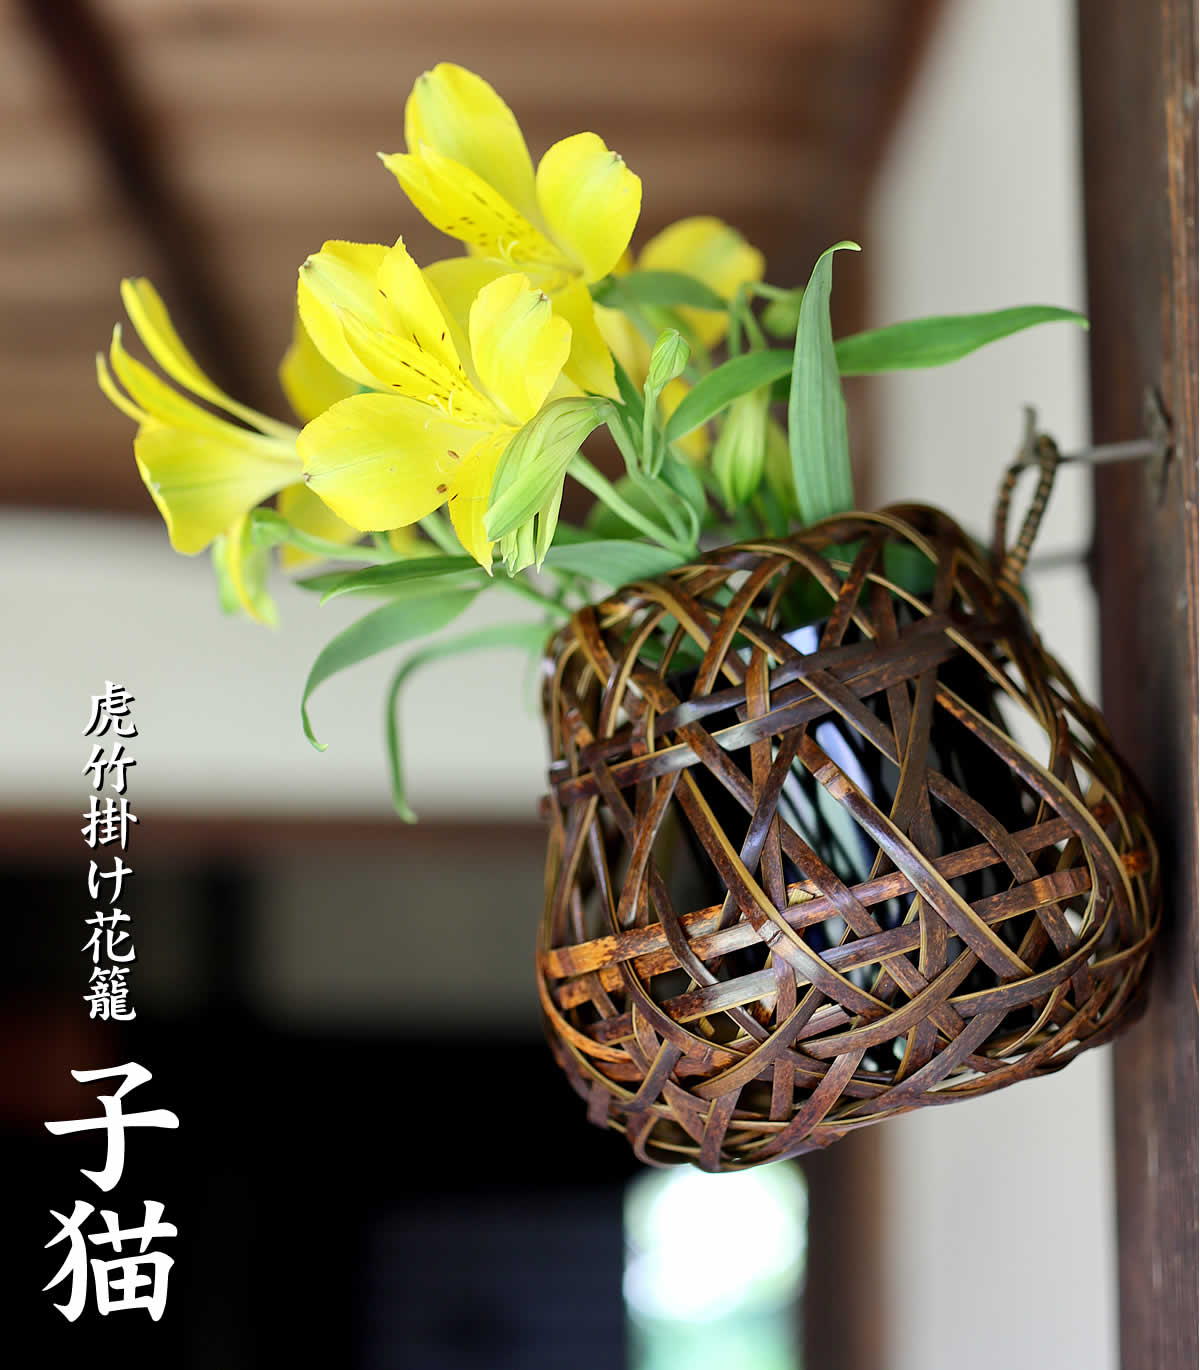 虎竹掛け花籠 子猫は、日本唯一の虎斑竹を繊細に編み込んだ花かごです。置いても壁に掛けても飾れます。